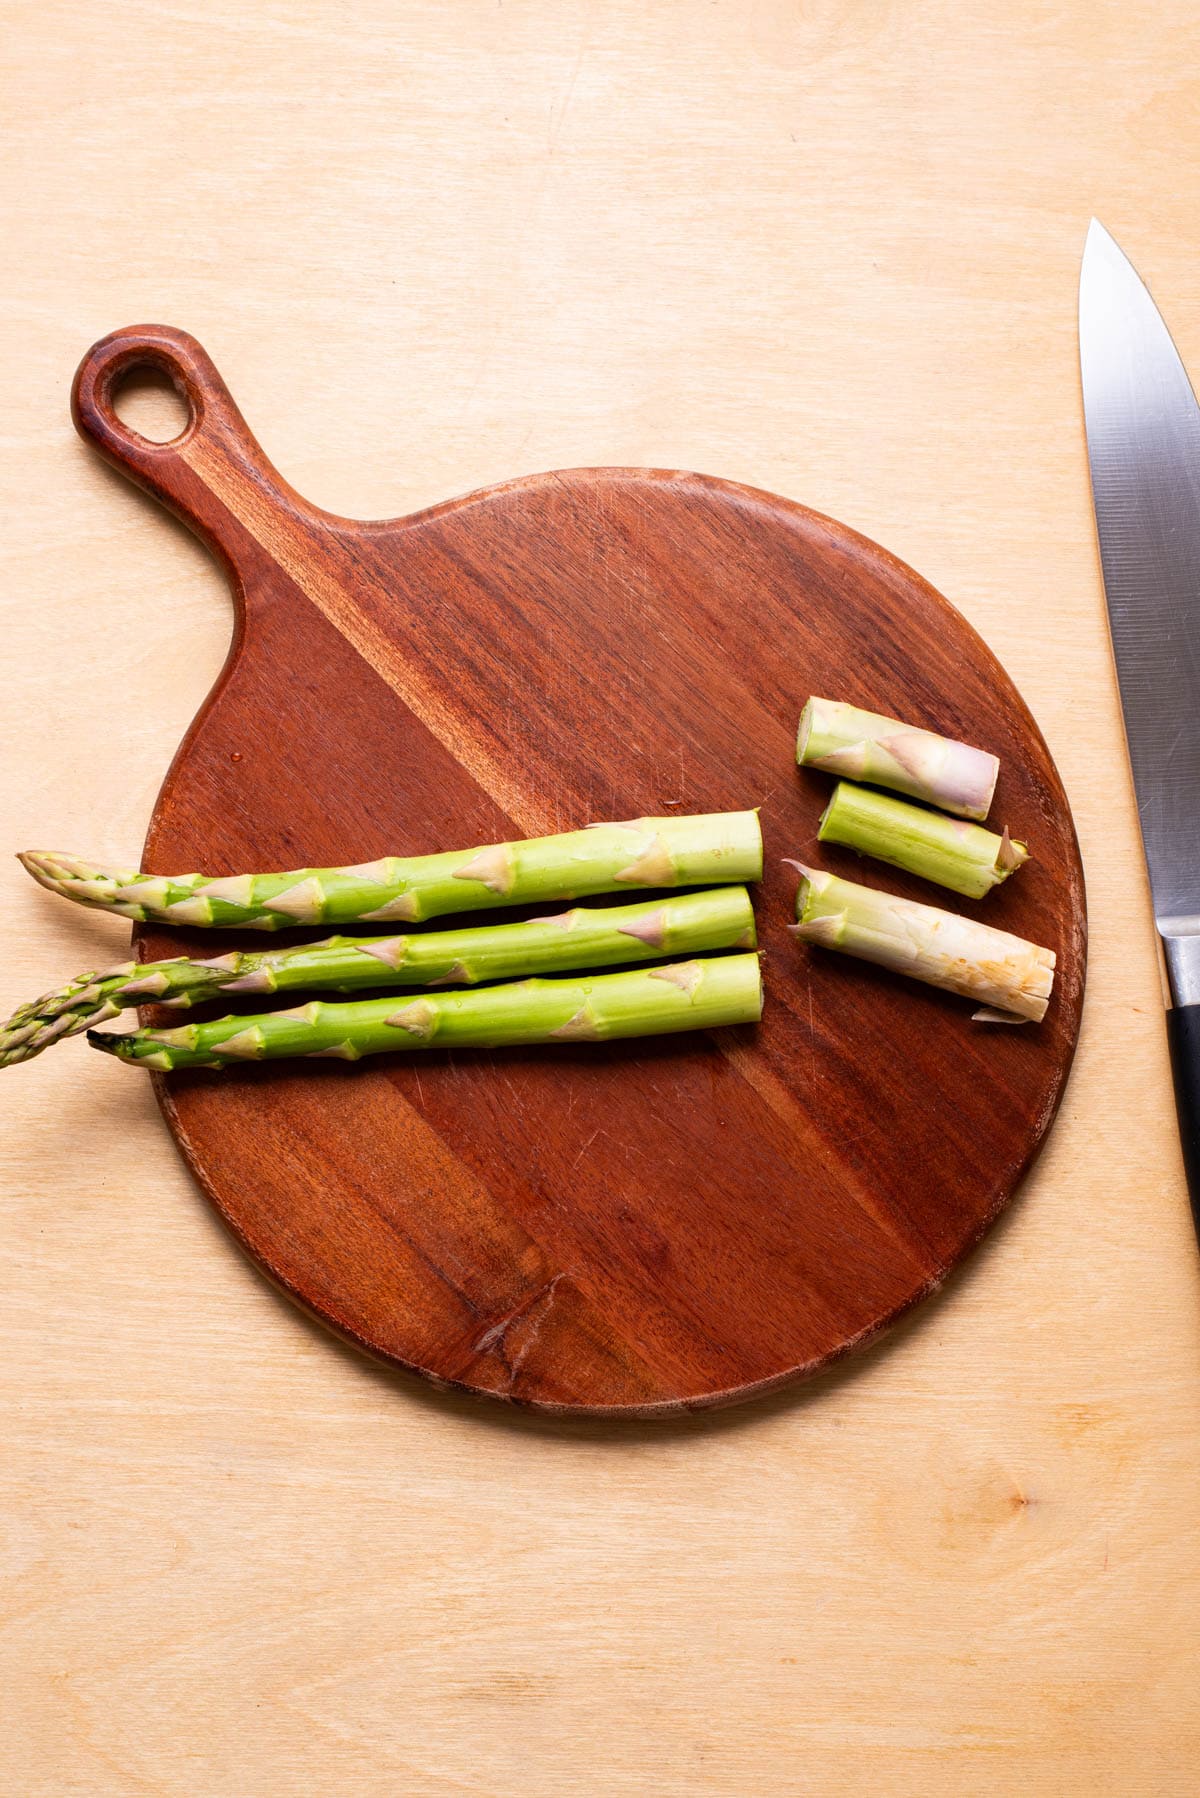 Trimming asparagus.